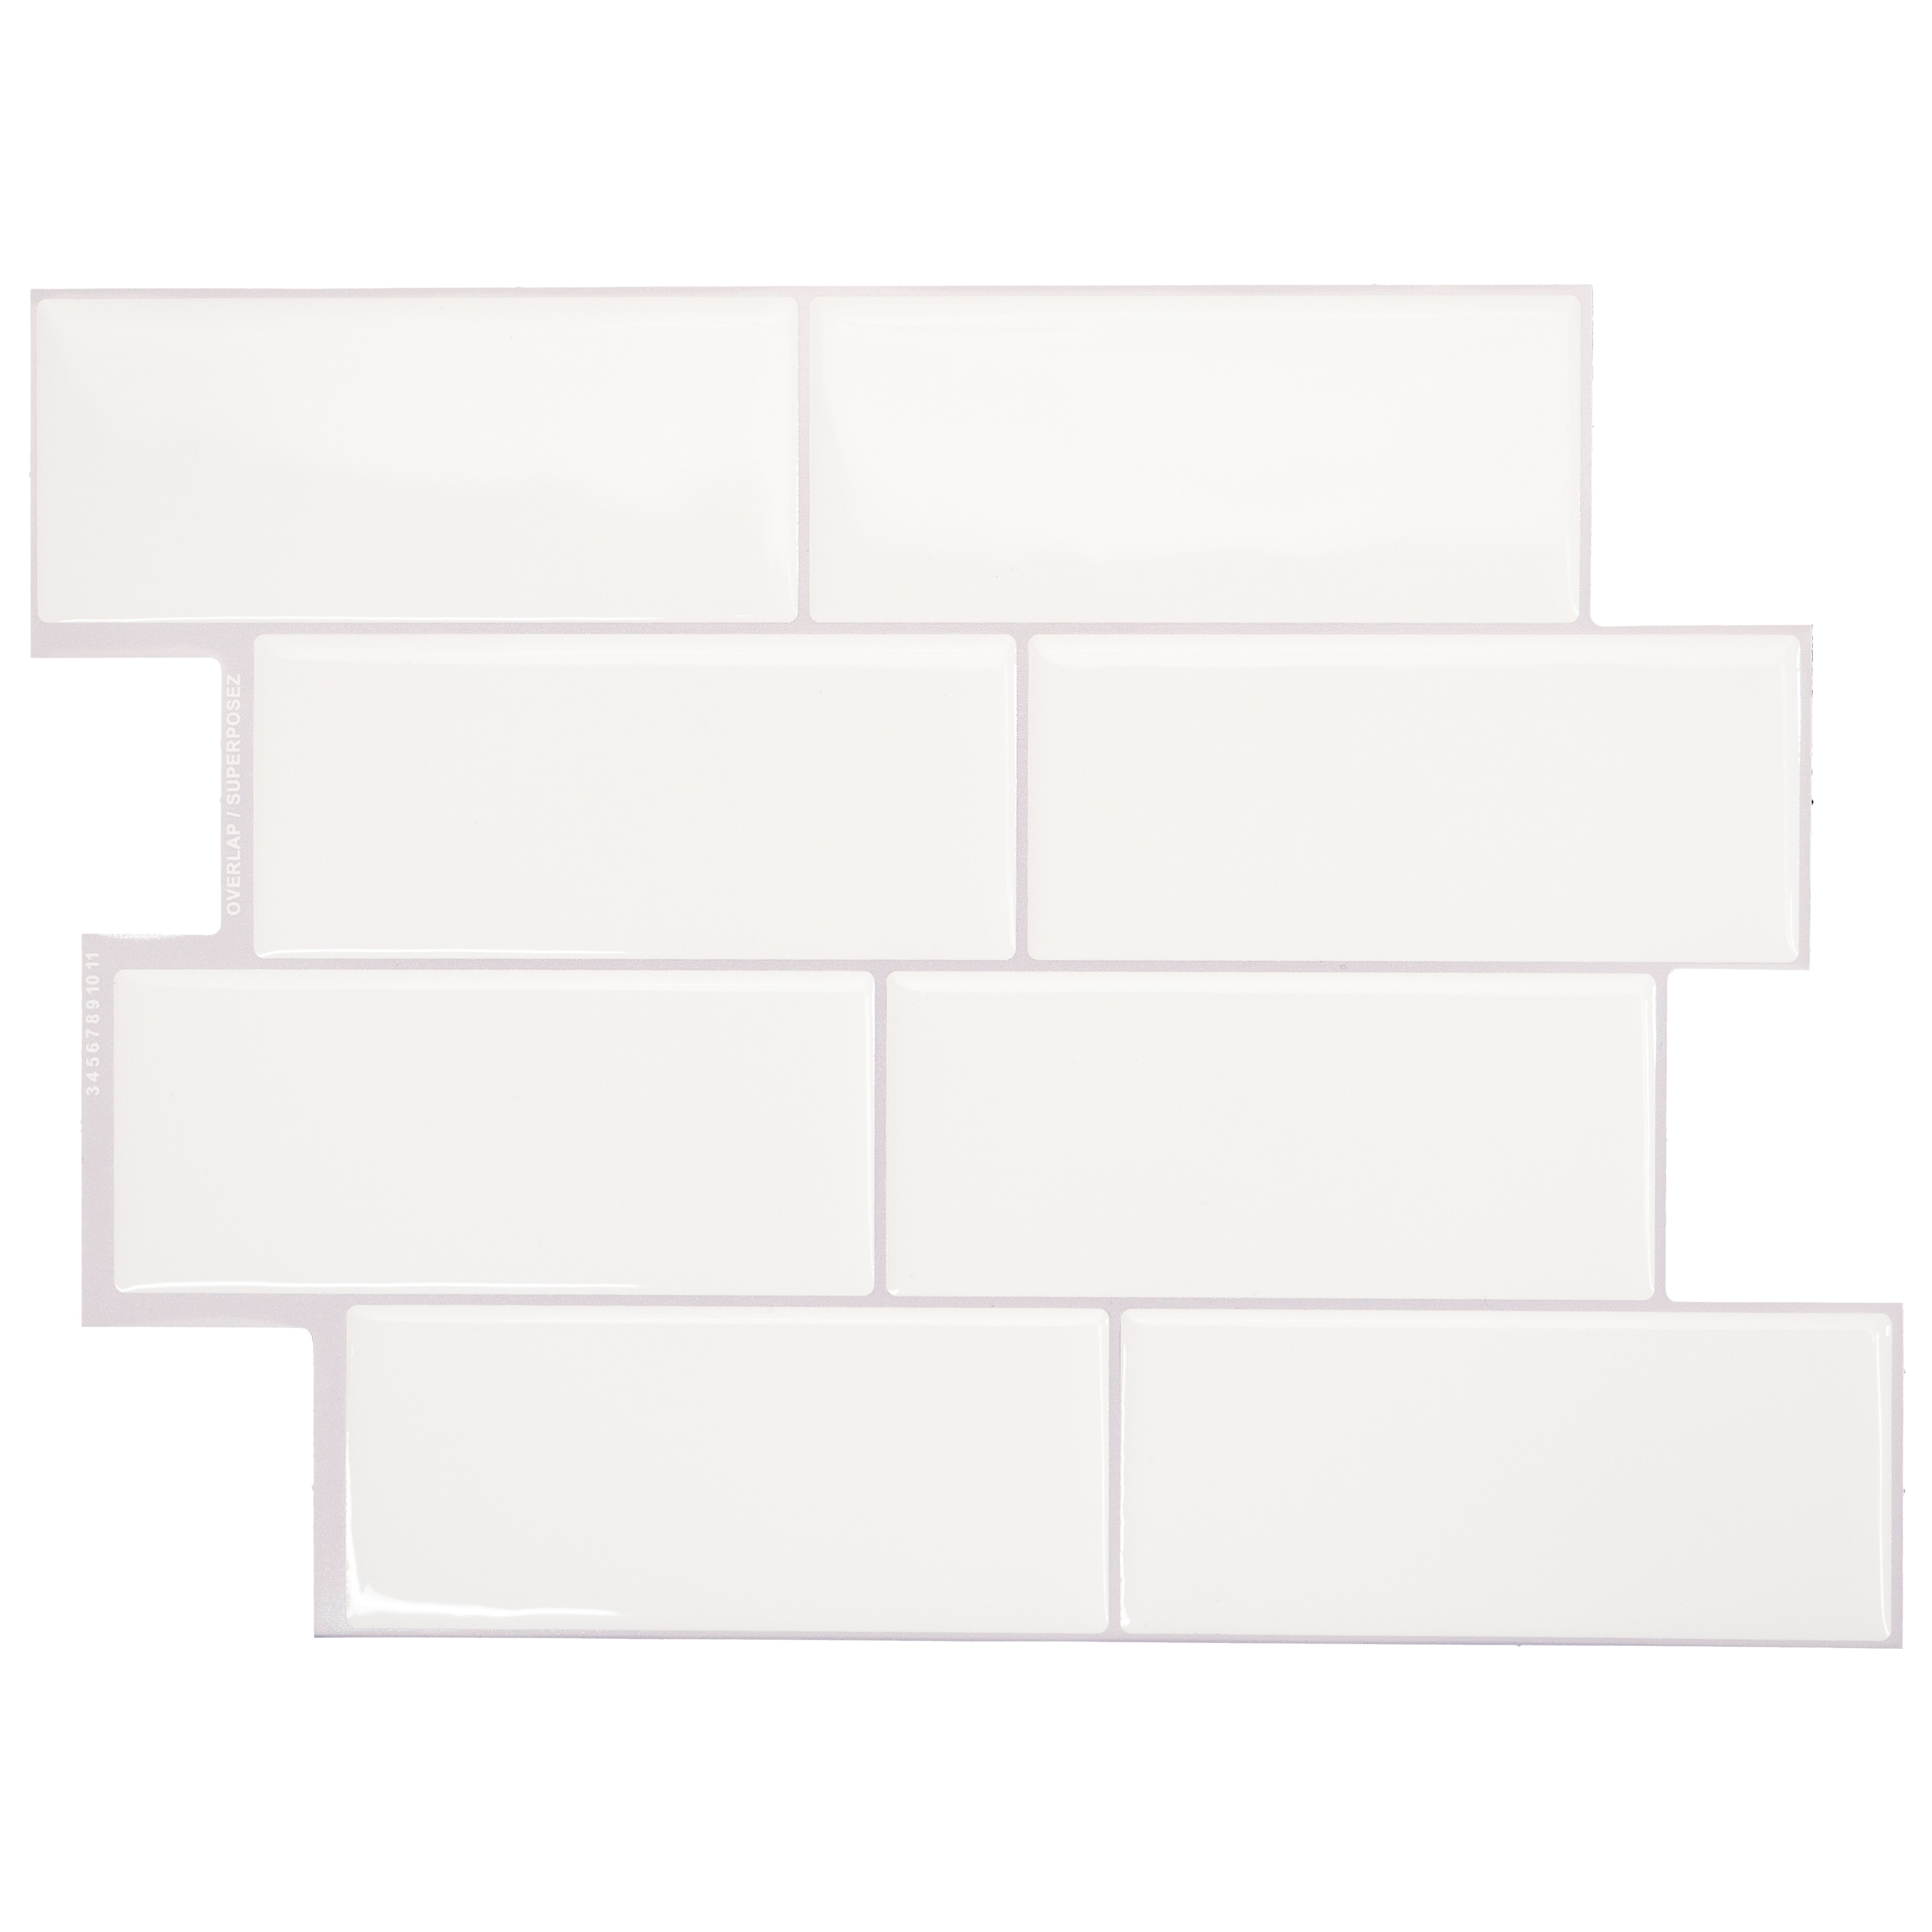 FunStick 15 Tile Peel and Stick Backsplash for Kitchen White Backsplash  Tiles 12x12 3D Self Adhesive Subway Tile for Bathroom Shower Waterproof